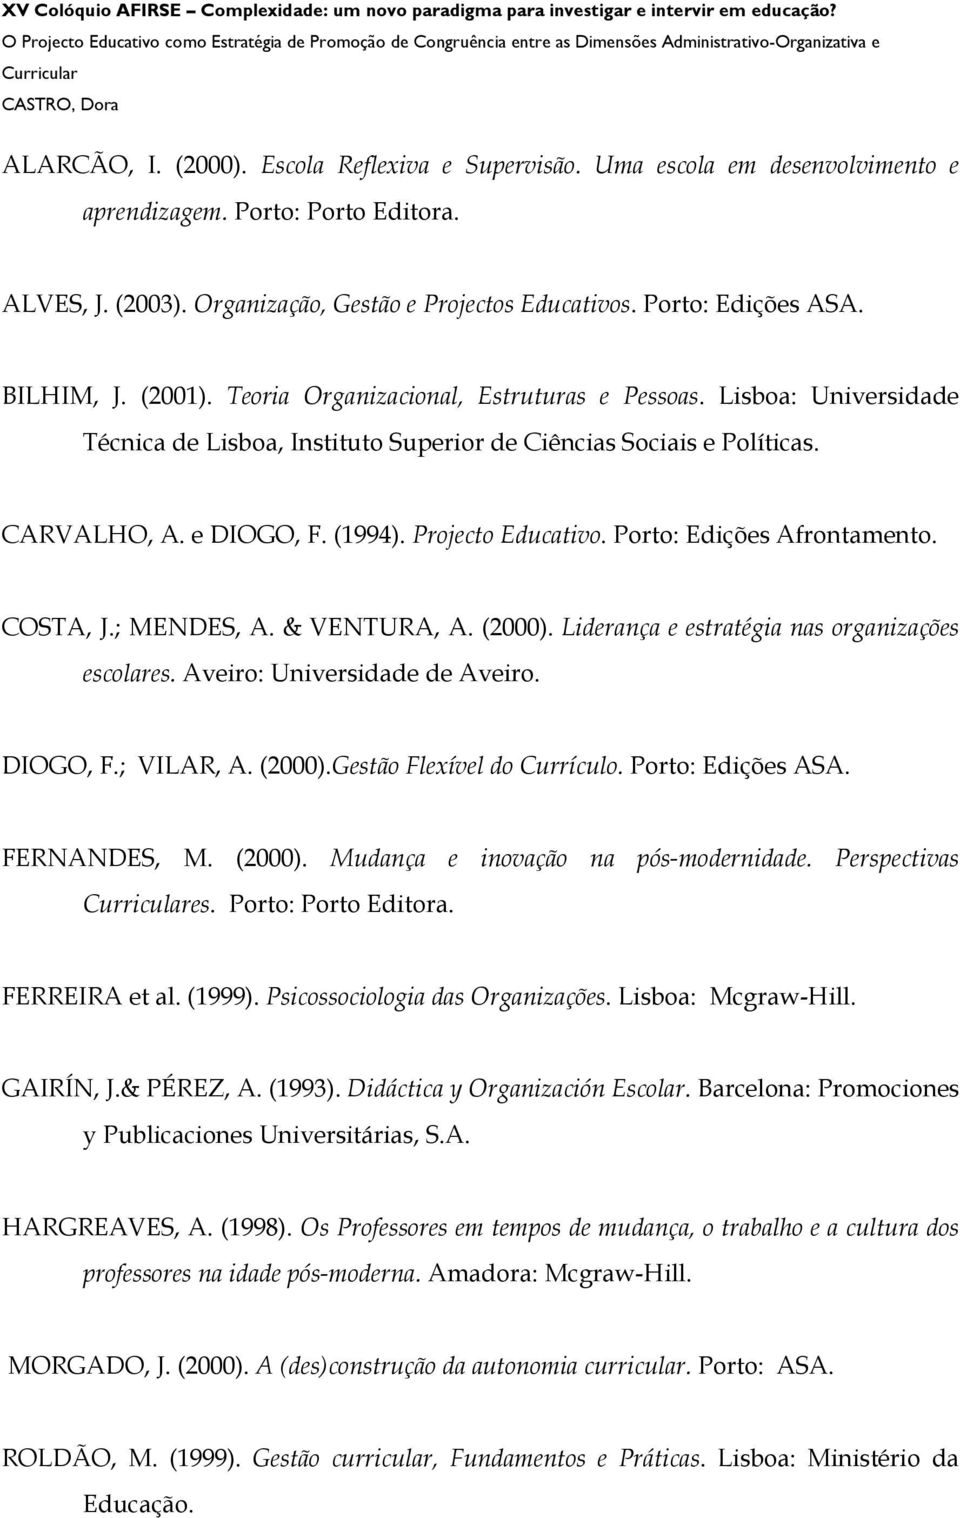 Projecto Educativo. Porto: Edições Afrontamento. COSTA, J.; MENDES, A. & VENTURA, A. (2000). Liderança e estratégia nas organizações escolares. Aveiro: Universidade de Aveiro. DIOGO, F.; VILAR, A.